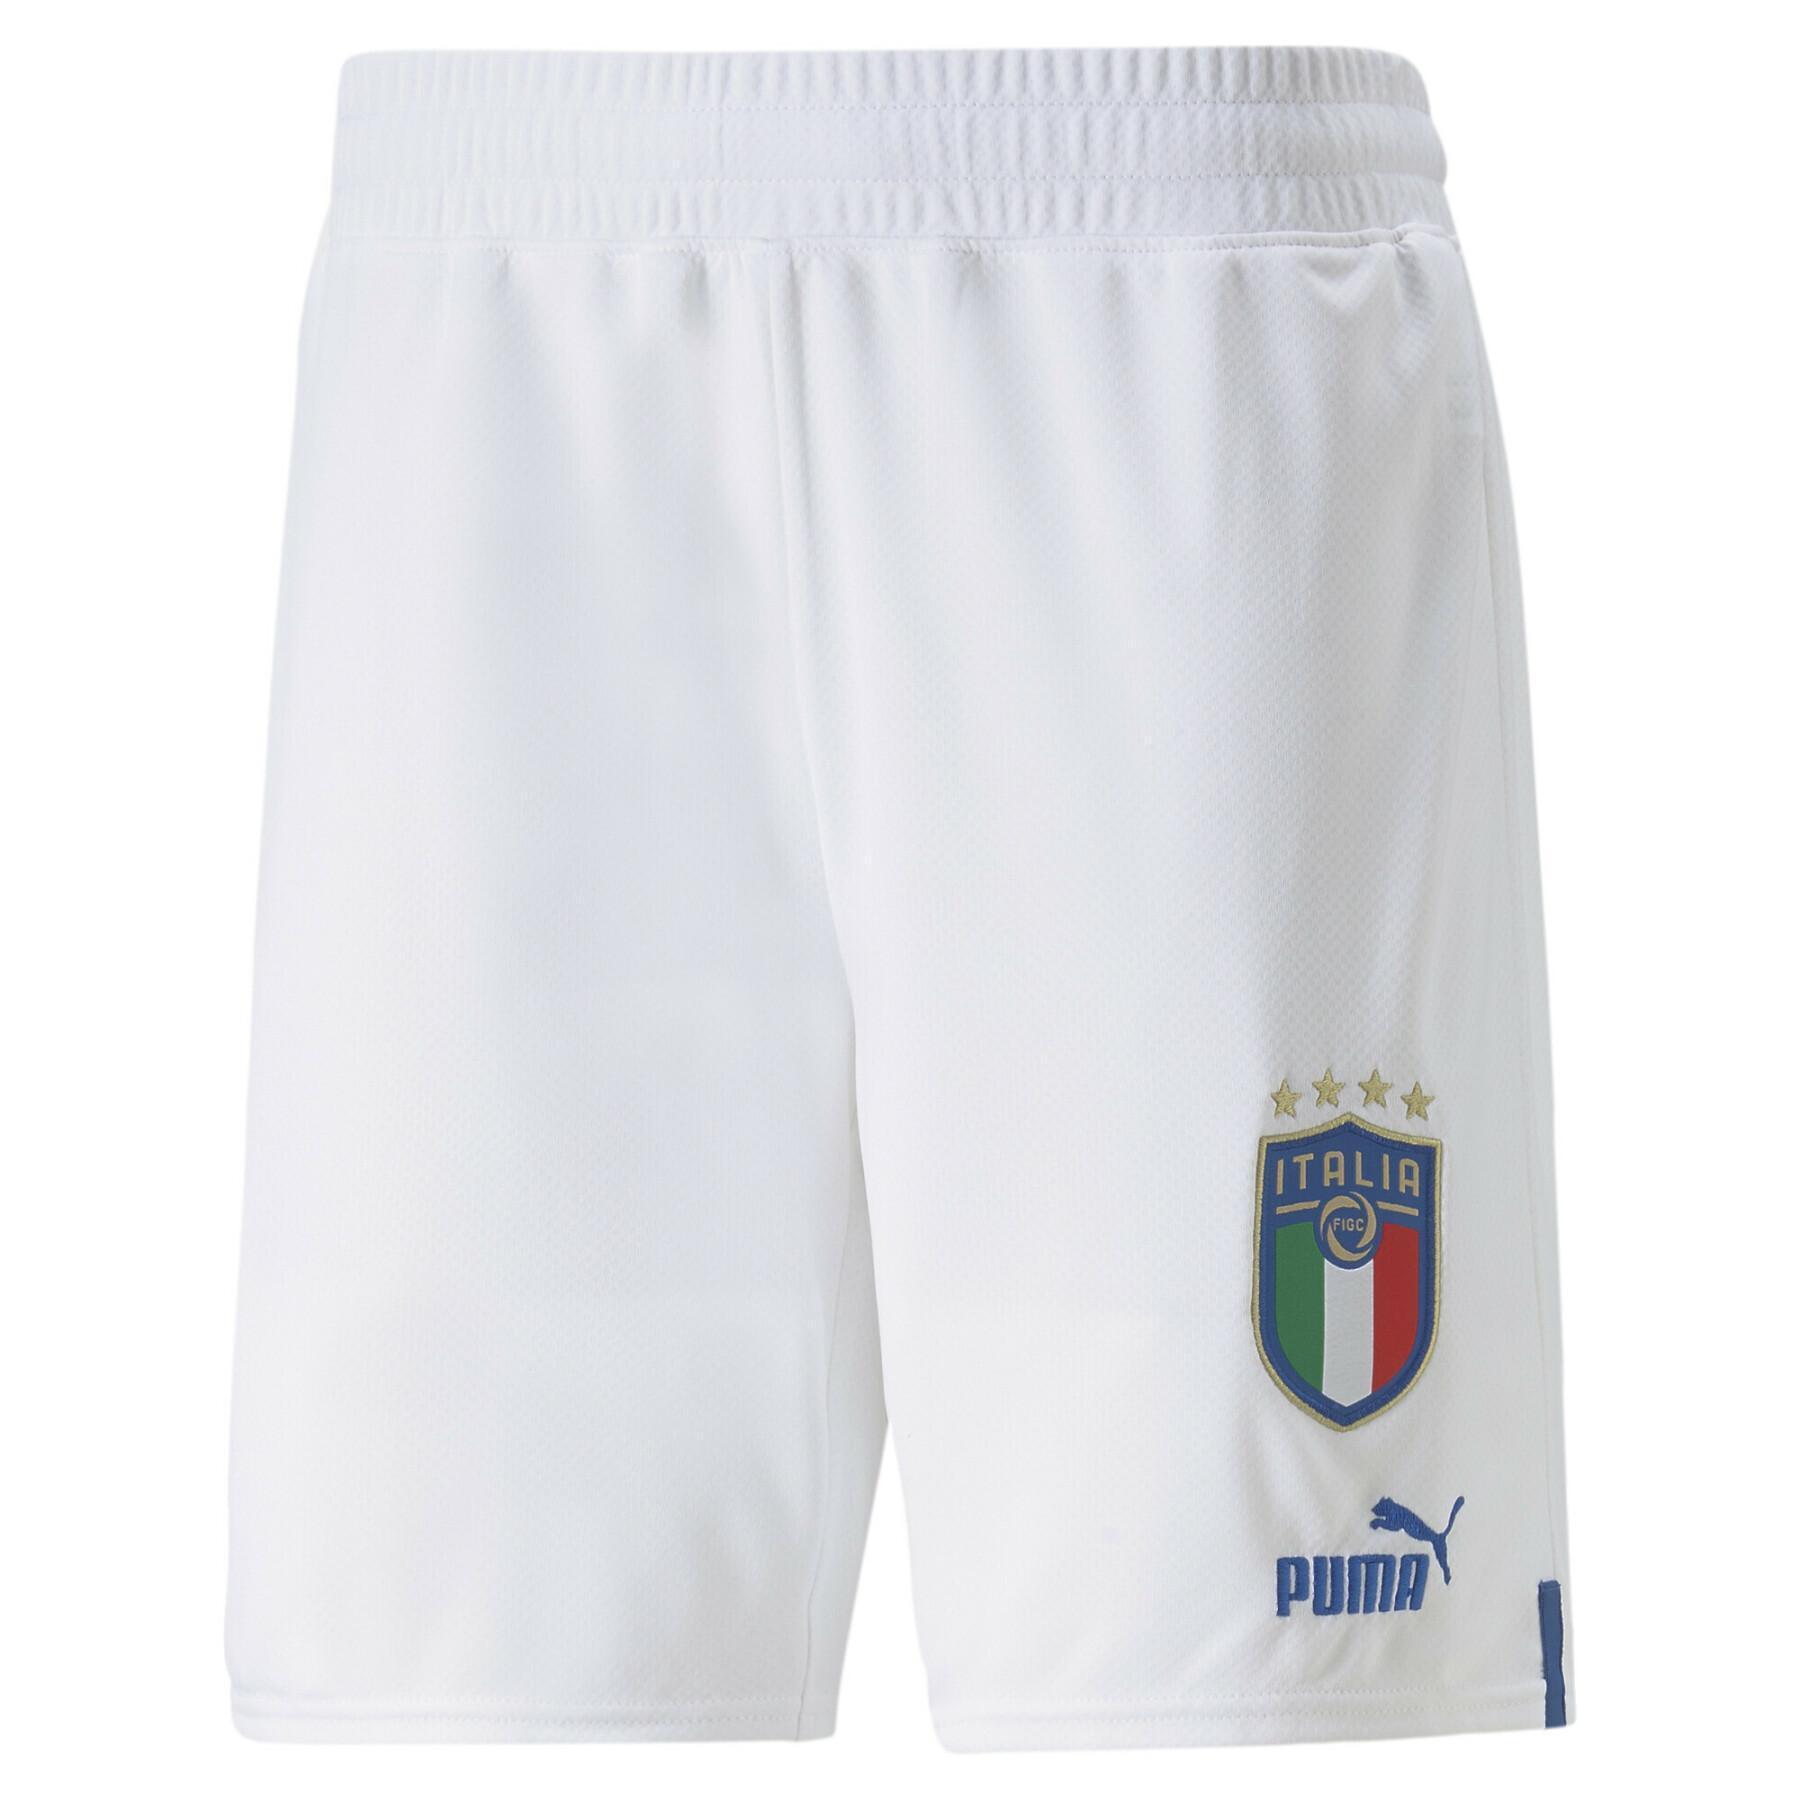 Home shorts Italy 2022